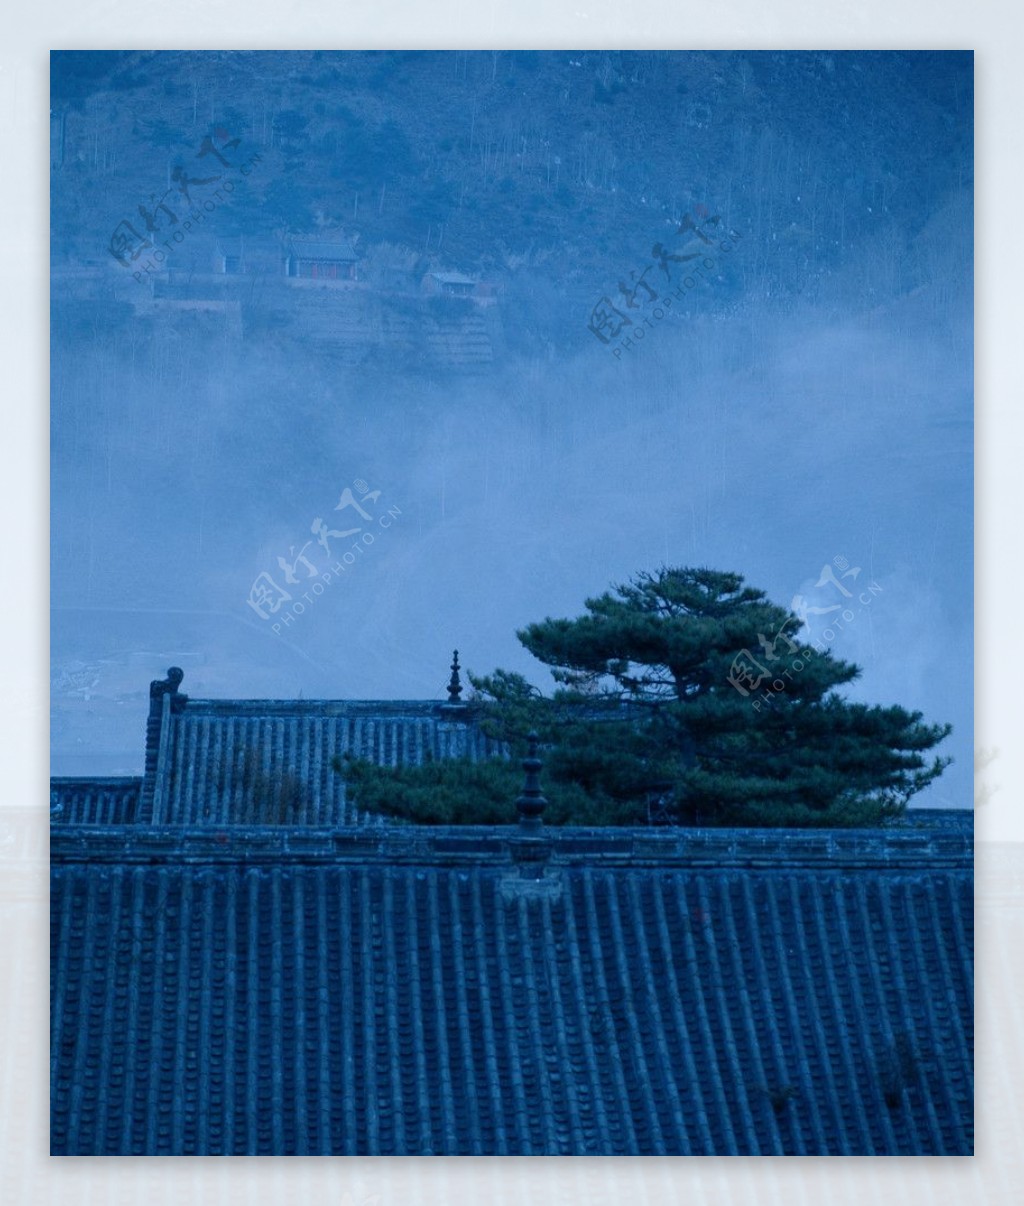 塔院寺晨雾图片